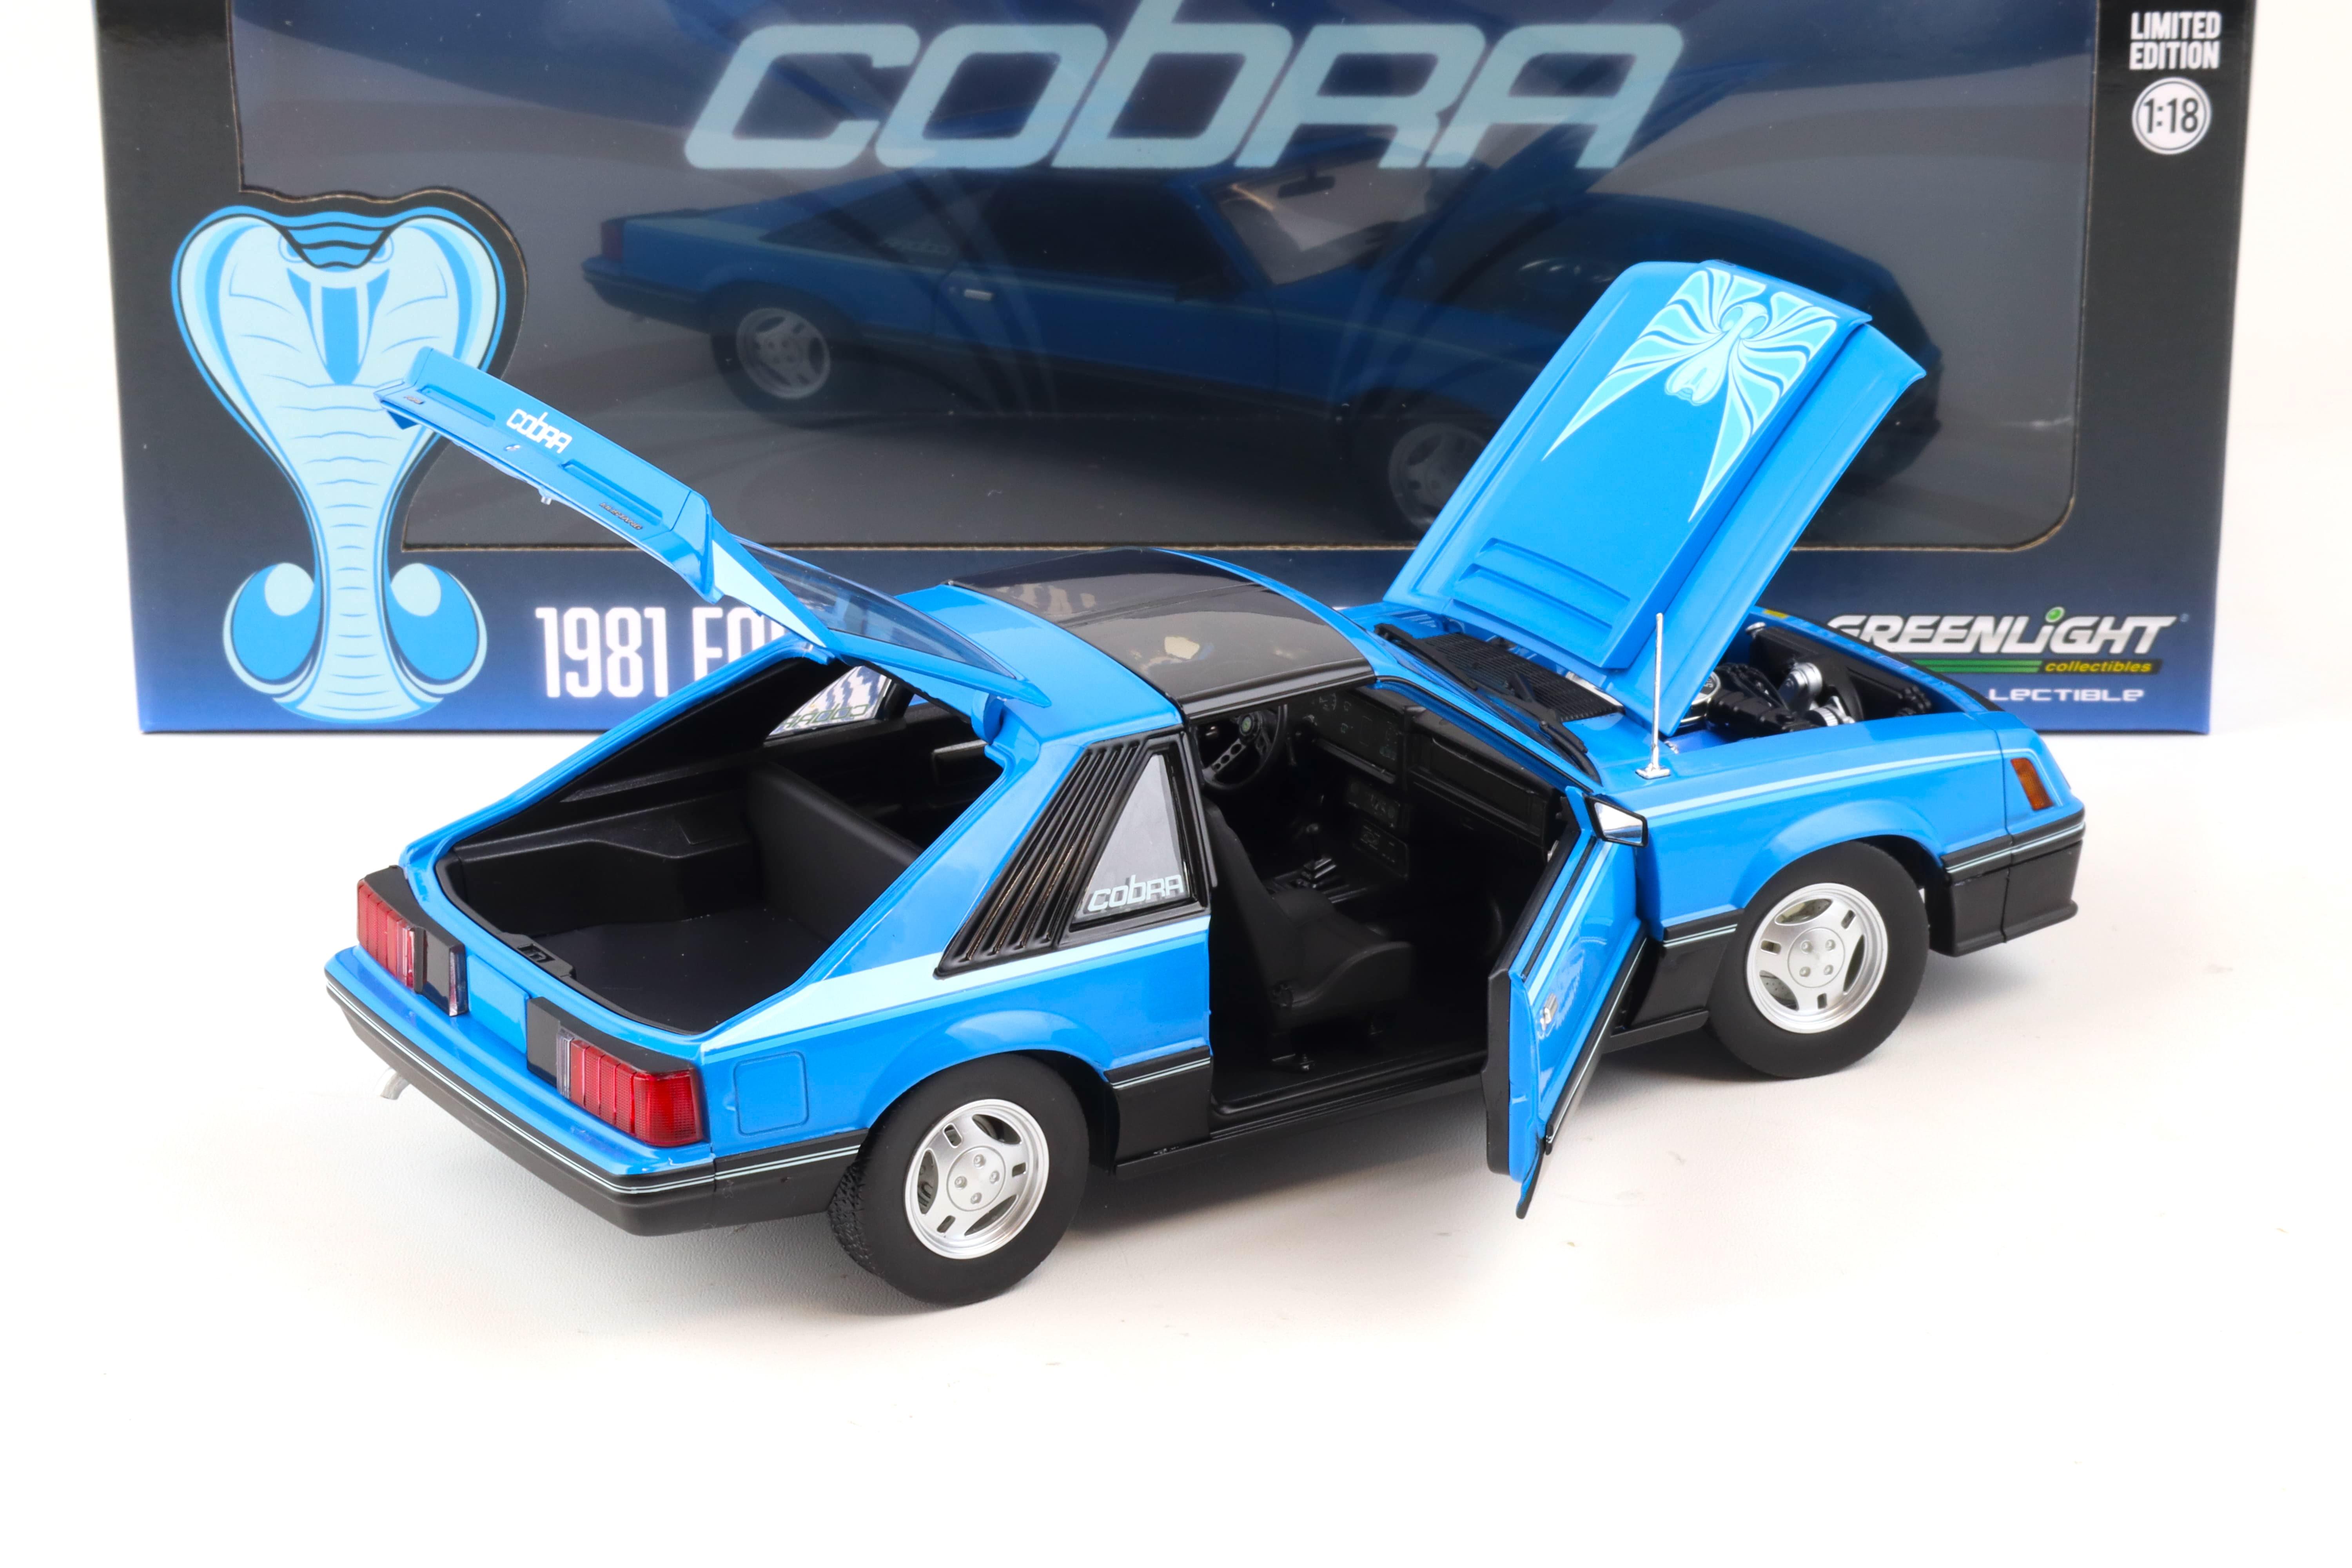 1:18 Greenlight 1981 Ford Mustang Cobra Fastback T-Top medium blue